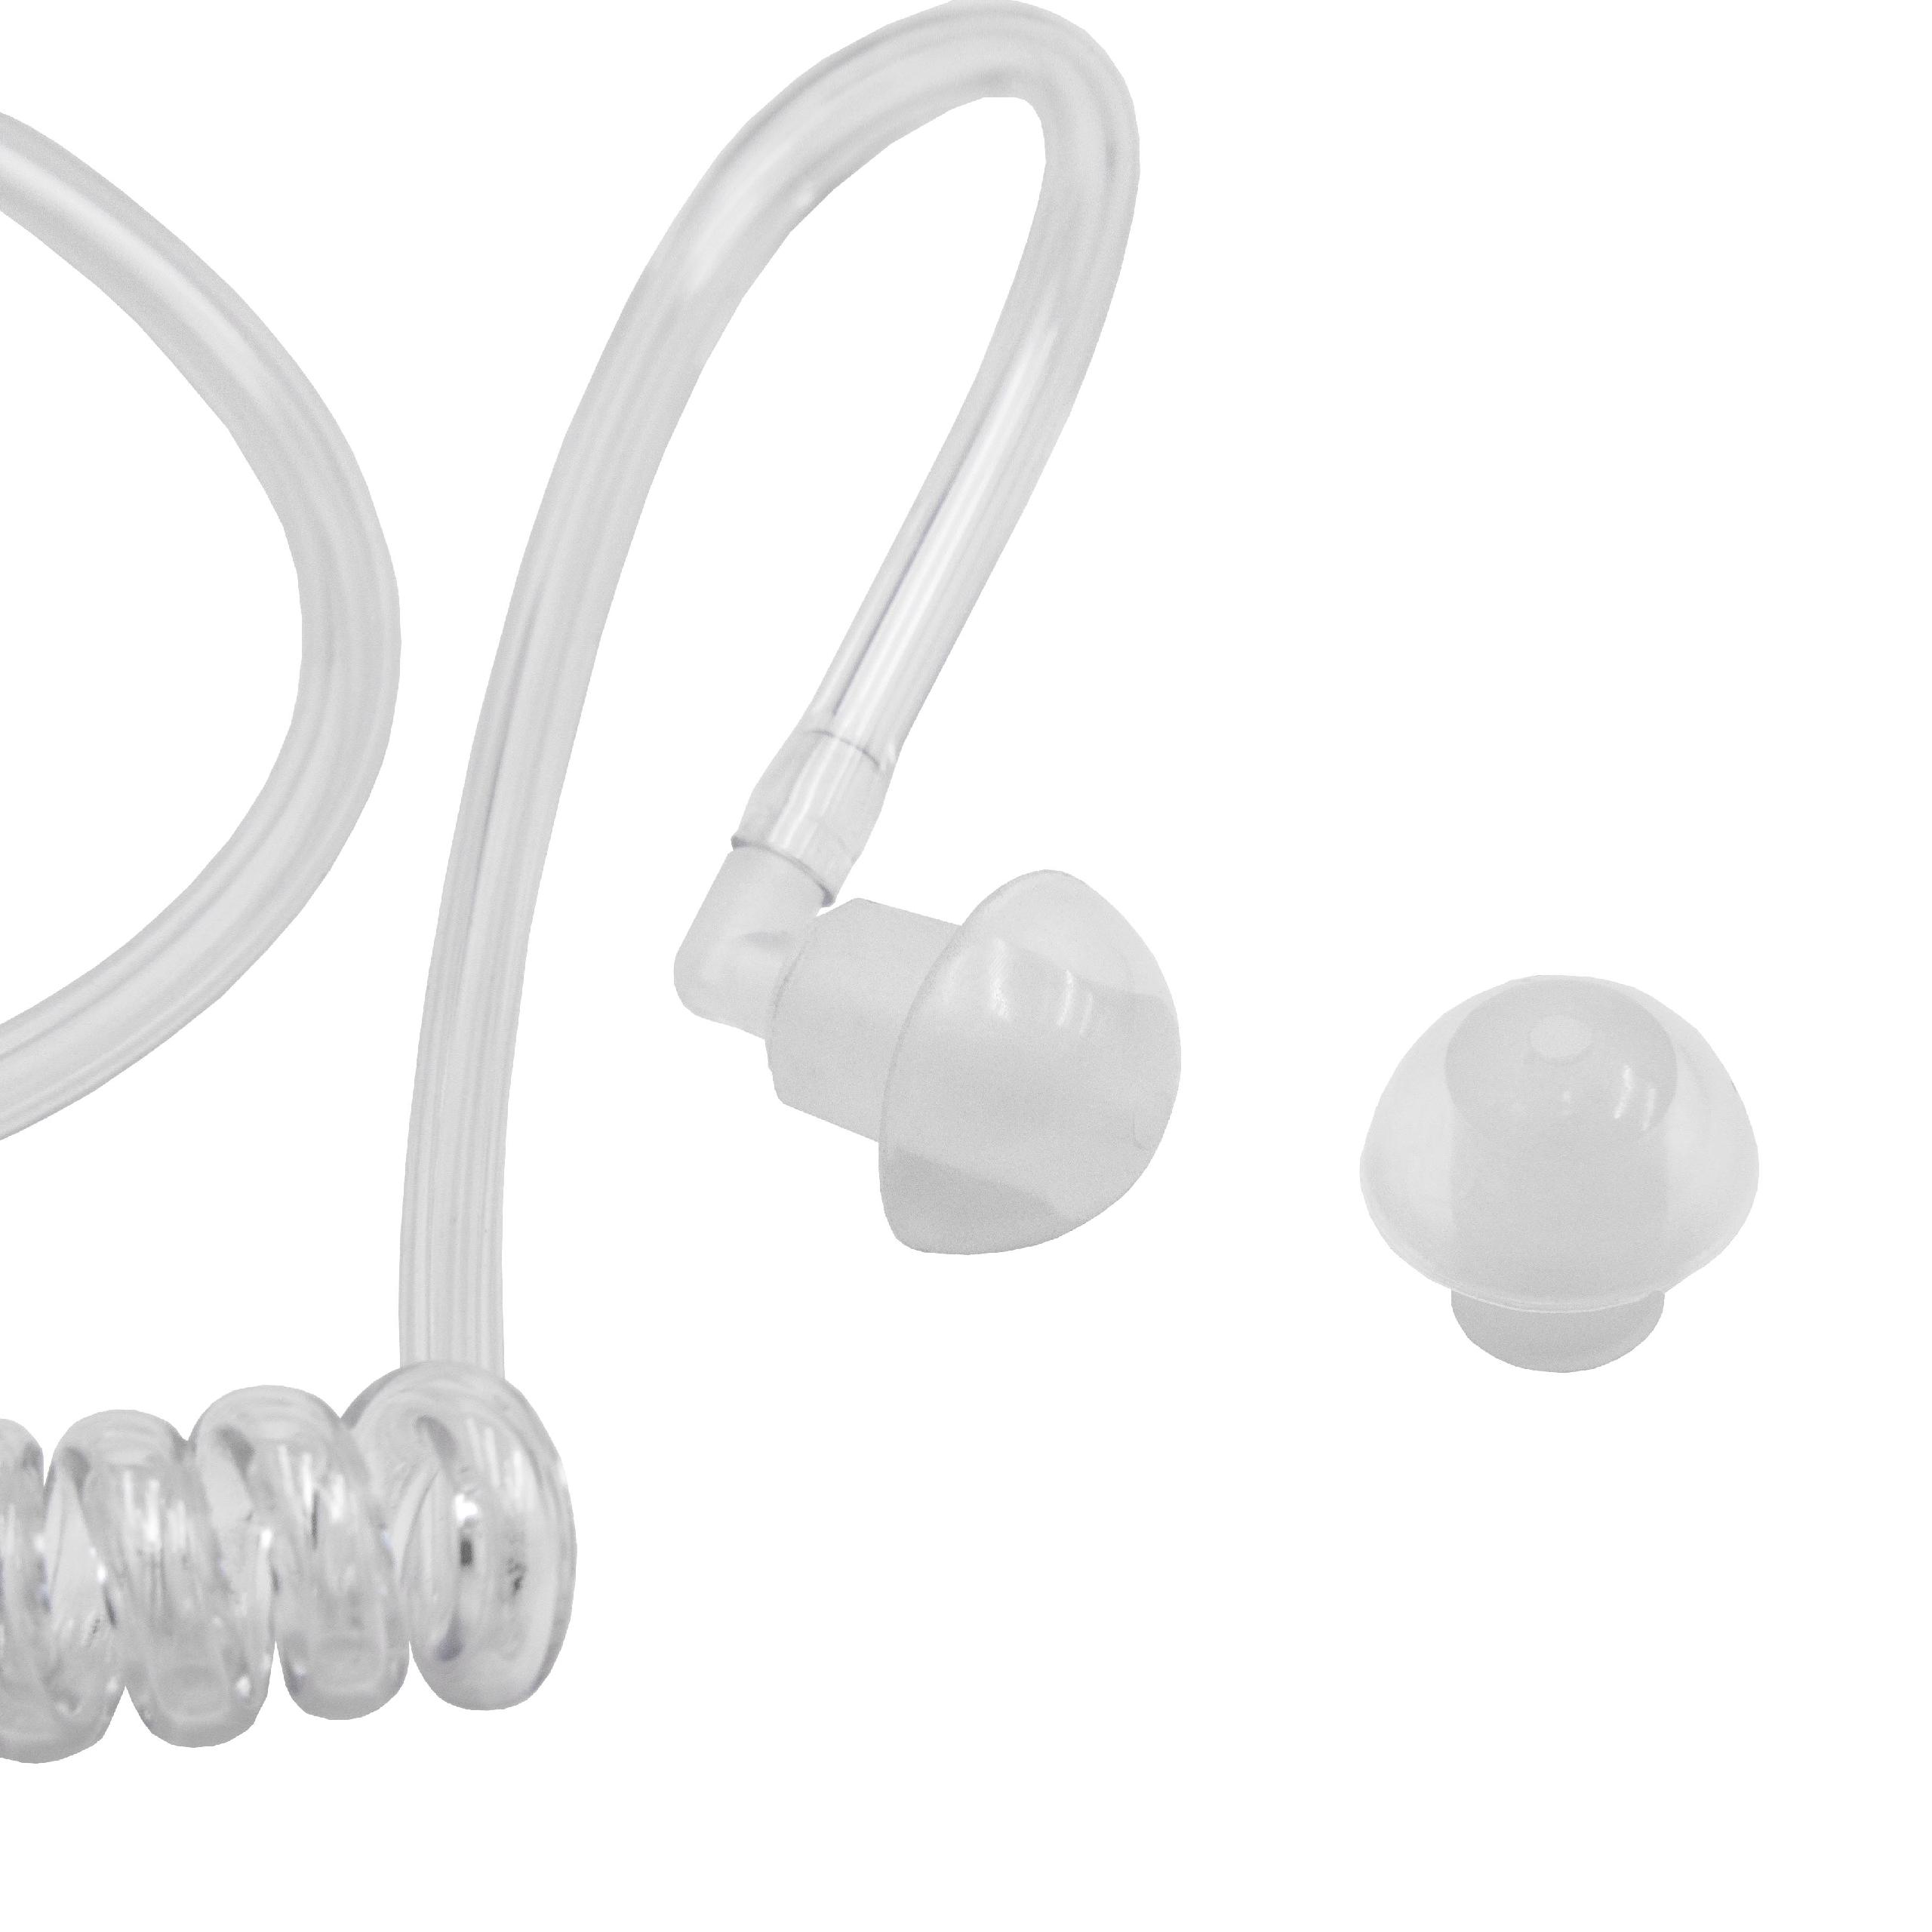  Tubo sonido oído para auriculares Motorola FTN6707 y todos los auriculares de seguridad comunes + clip